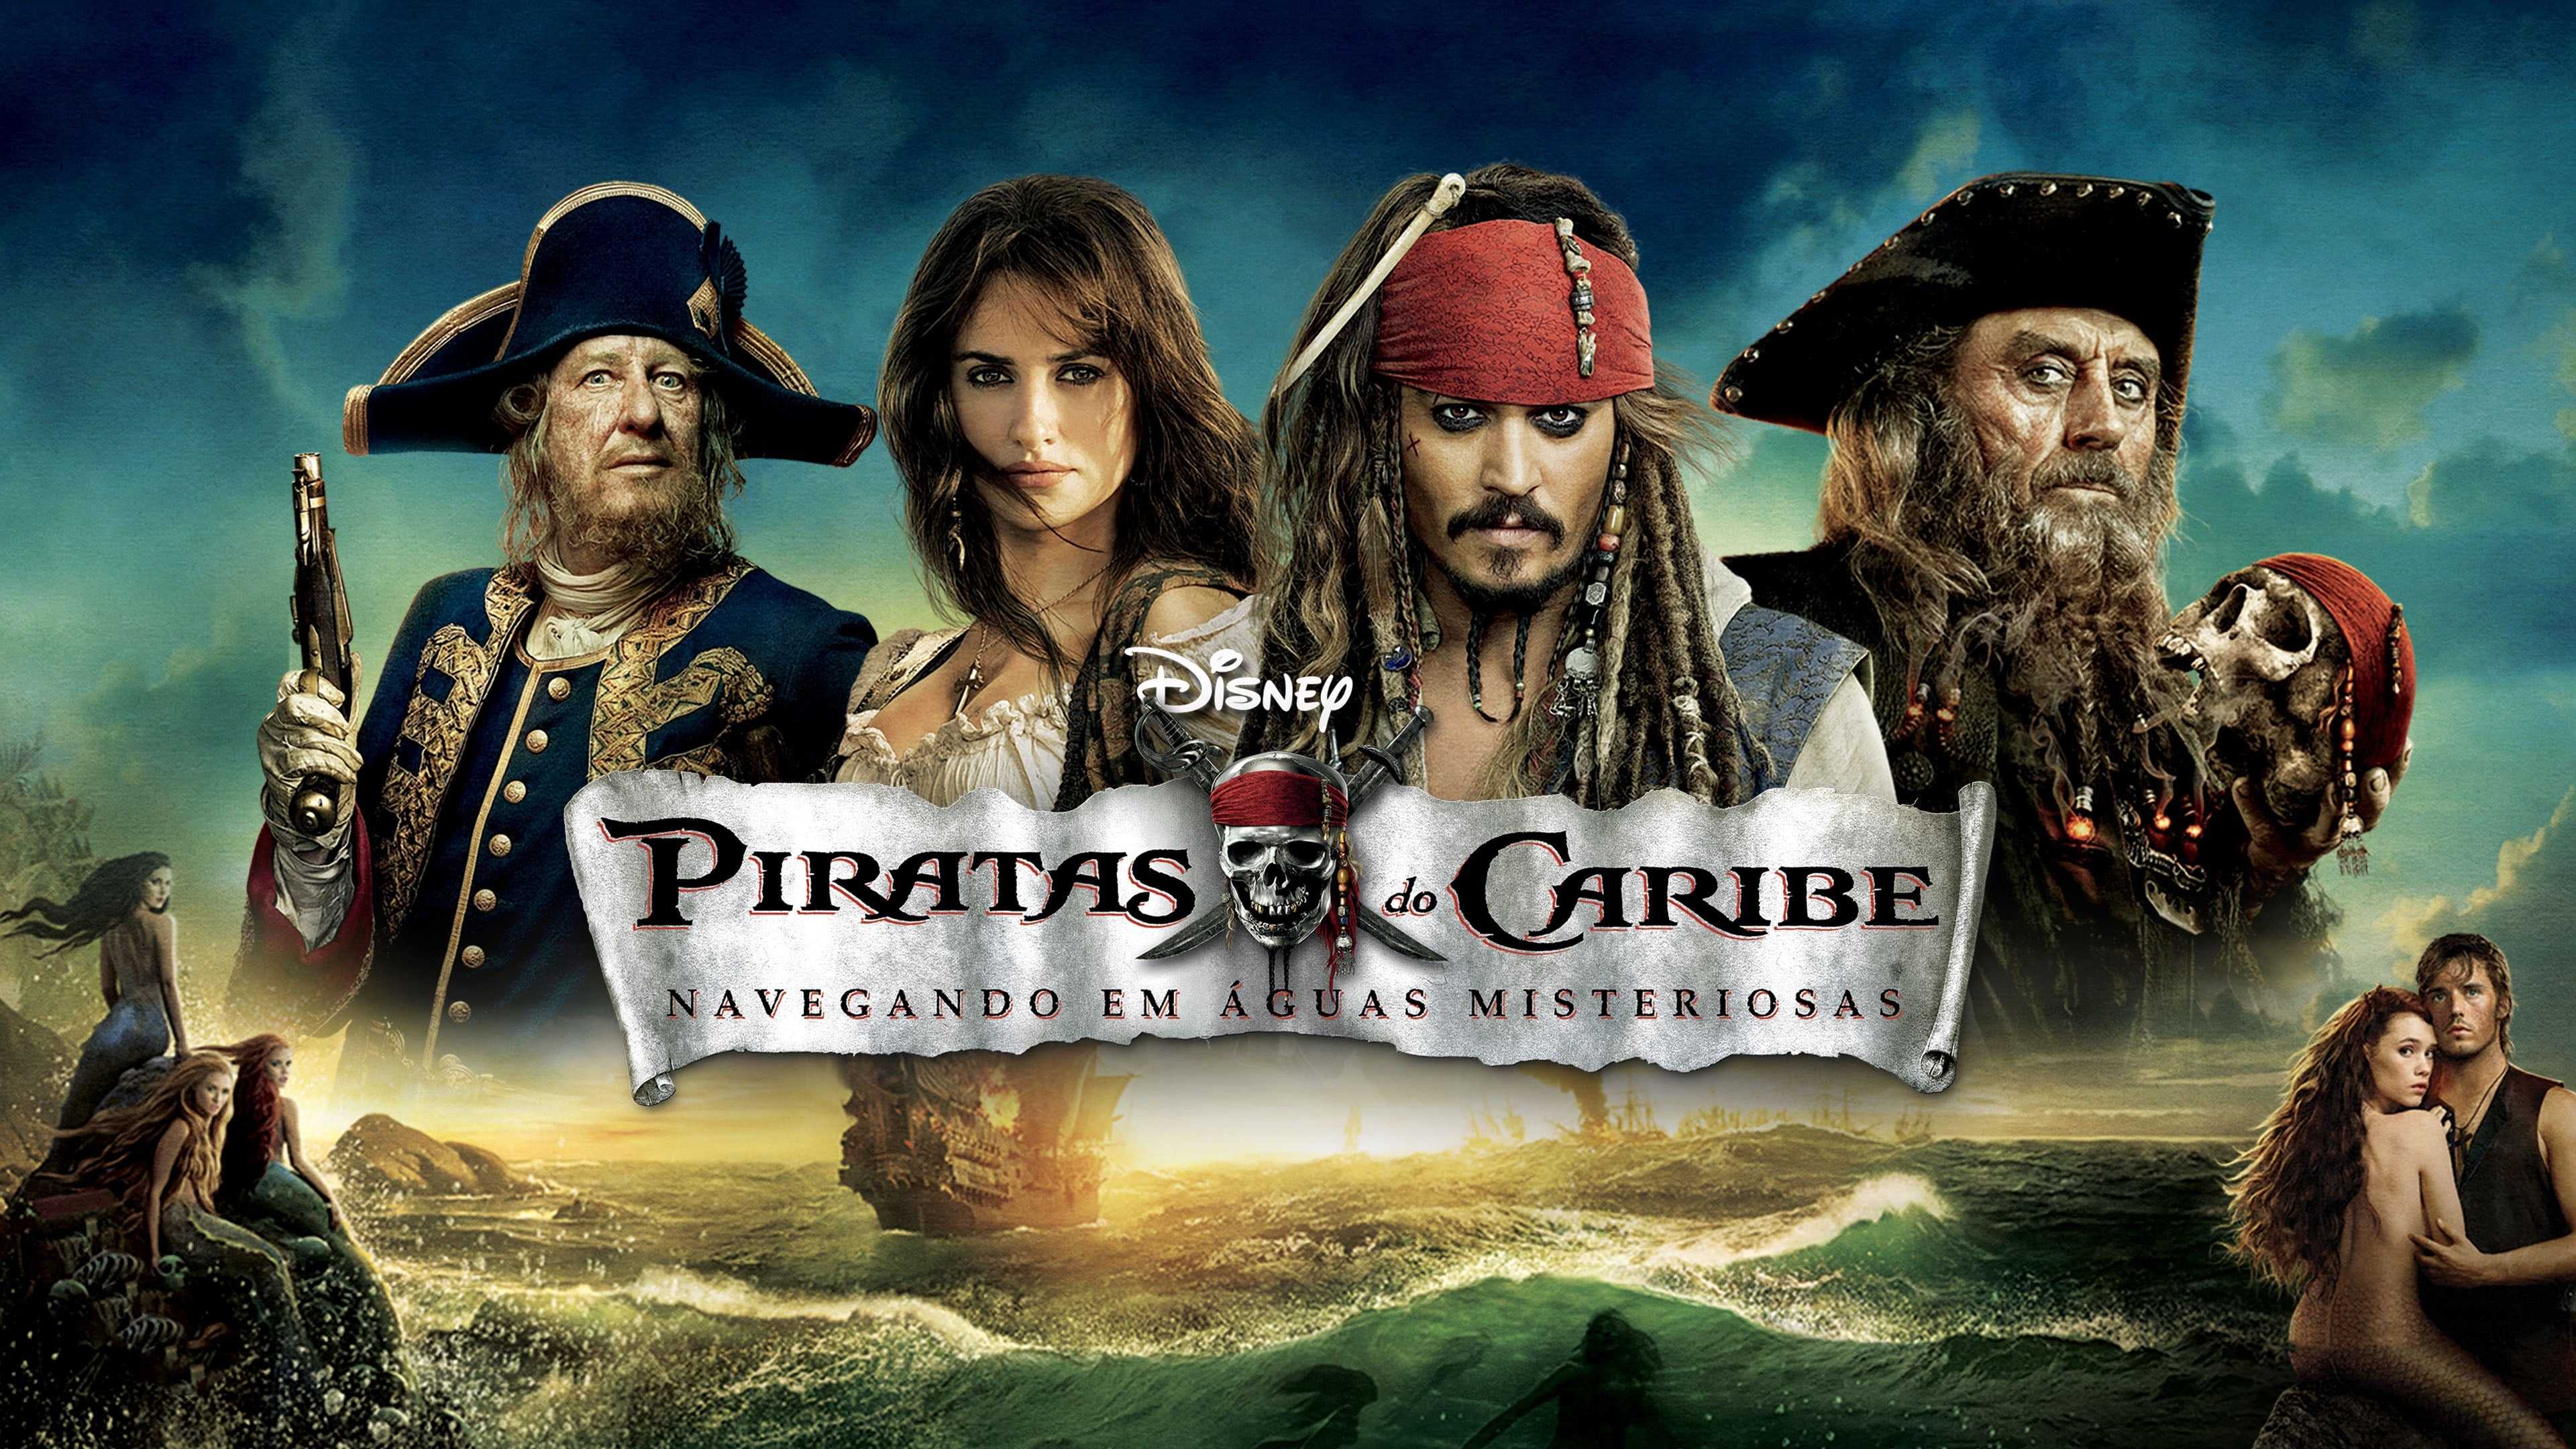 Пиратам обложки. Пираты Карибского моря 4 на странных берегах. Pirates of the Caribbean нас таранных берегах.